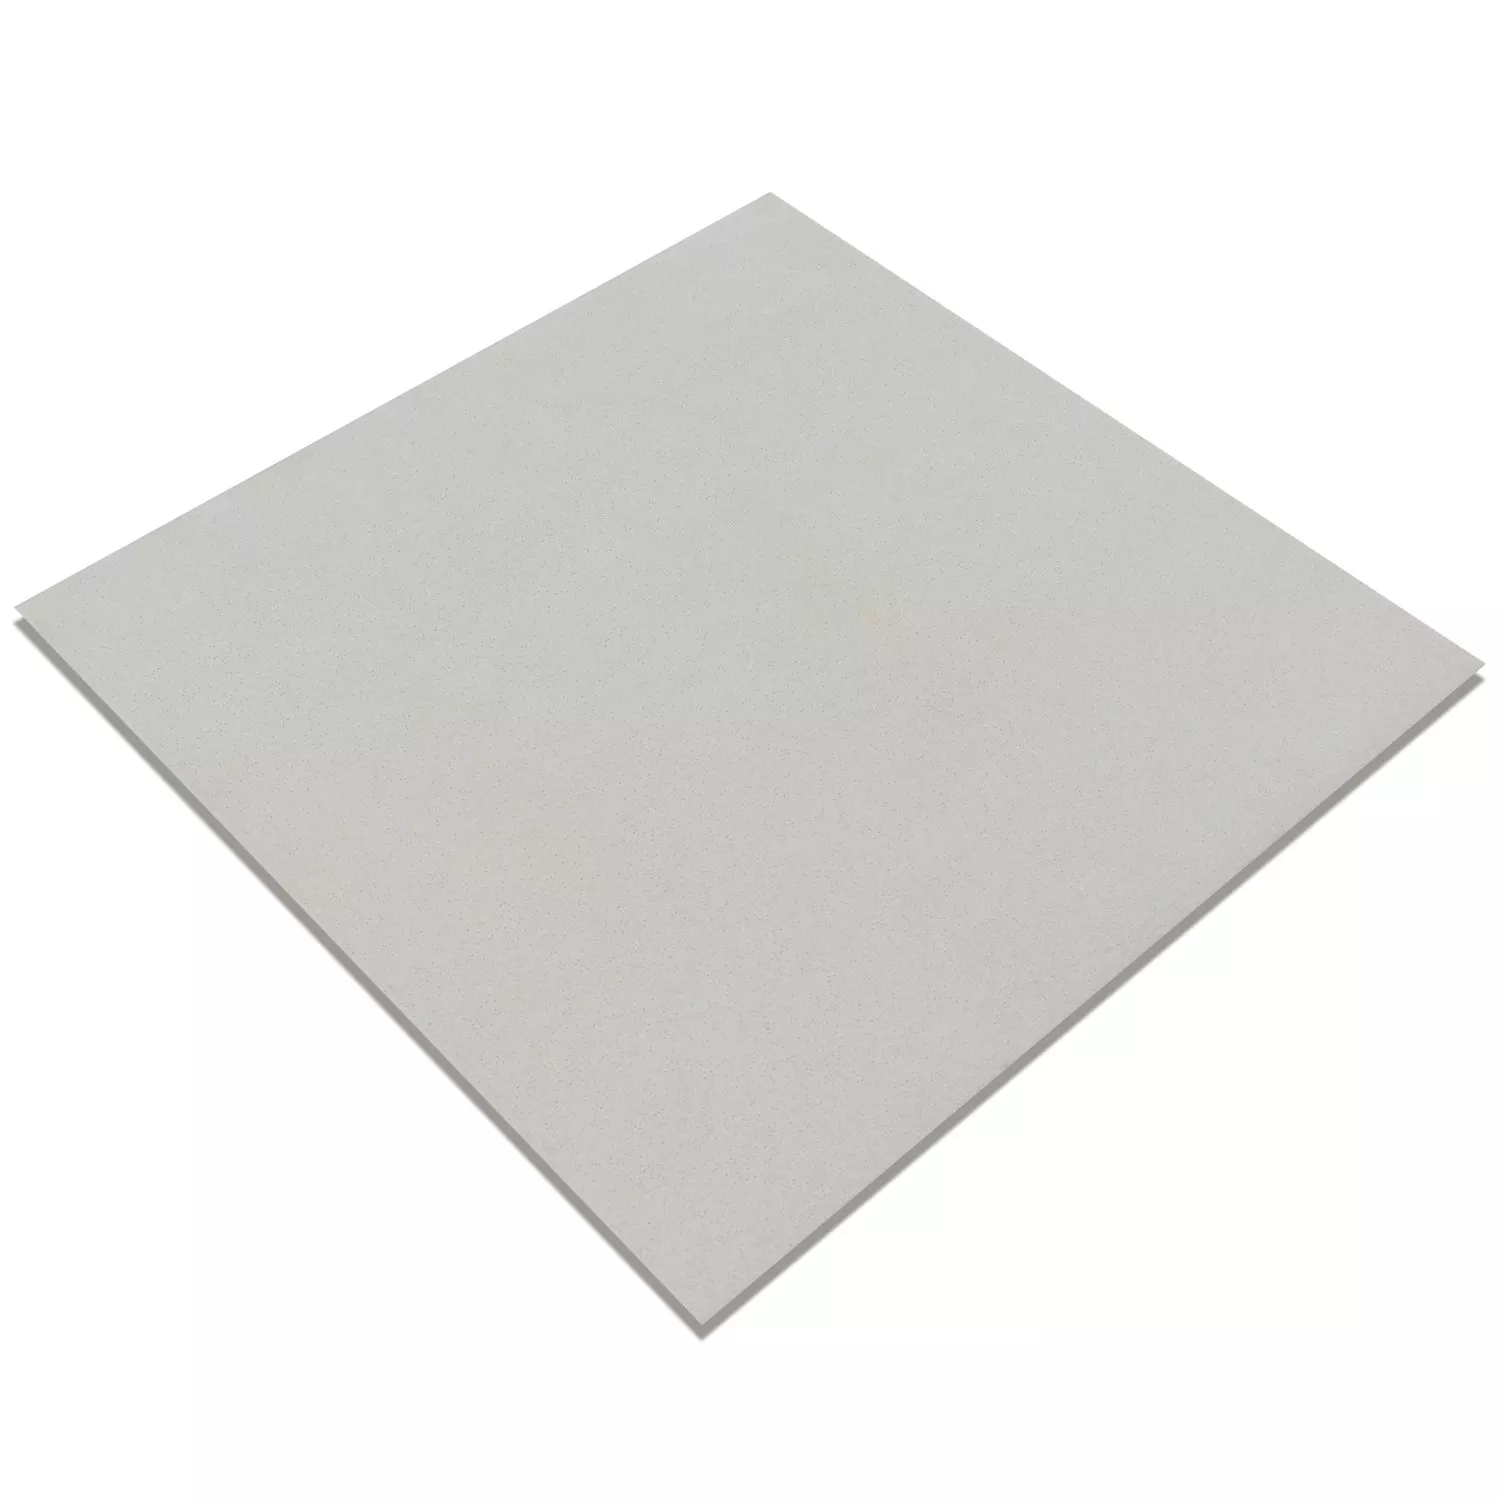 Carreaux De Ciment Optique Gotik Carreau De Base Blanc 22,3x22,3cm